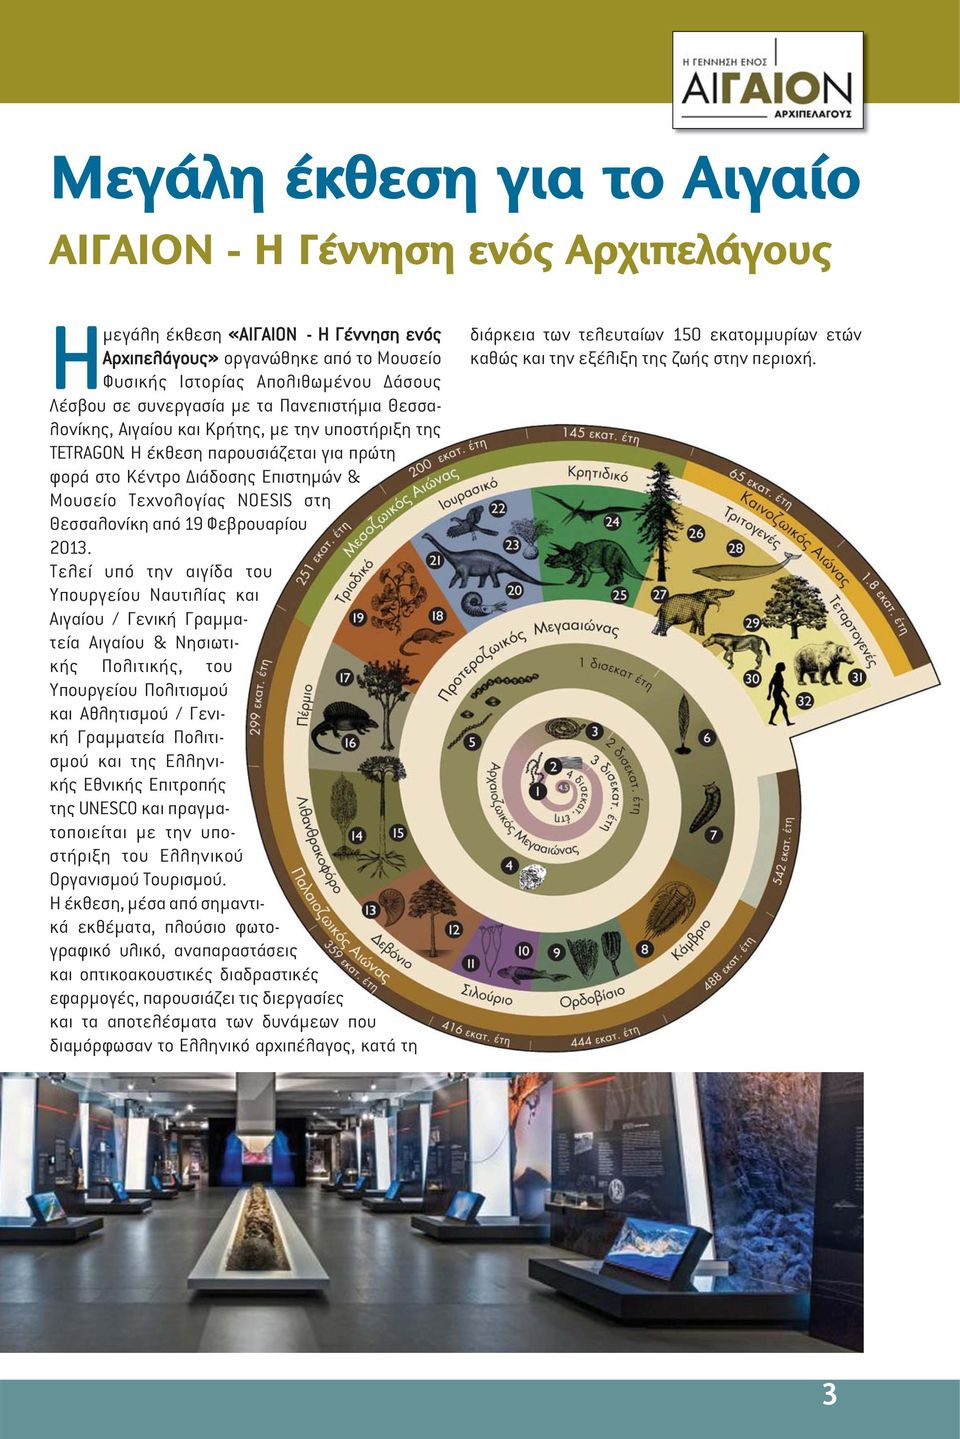 Η έκθεση παρουσιάζεται για πρώτη φορά στο Κέντρο ιάδοσης Επιστηµών & Μουσείο Τεχνολογίας NOESIS στη Θεσσαλονίκη από 19 Φεβρουαρίου 2013.